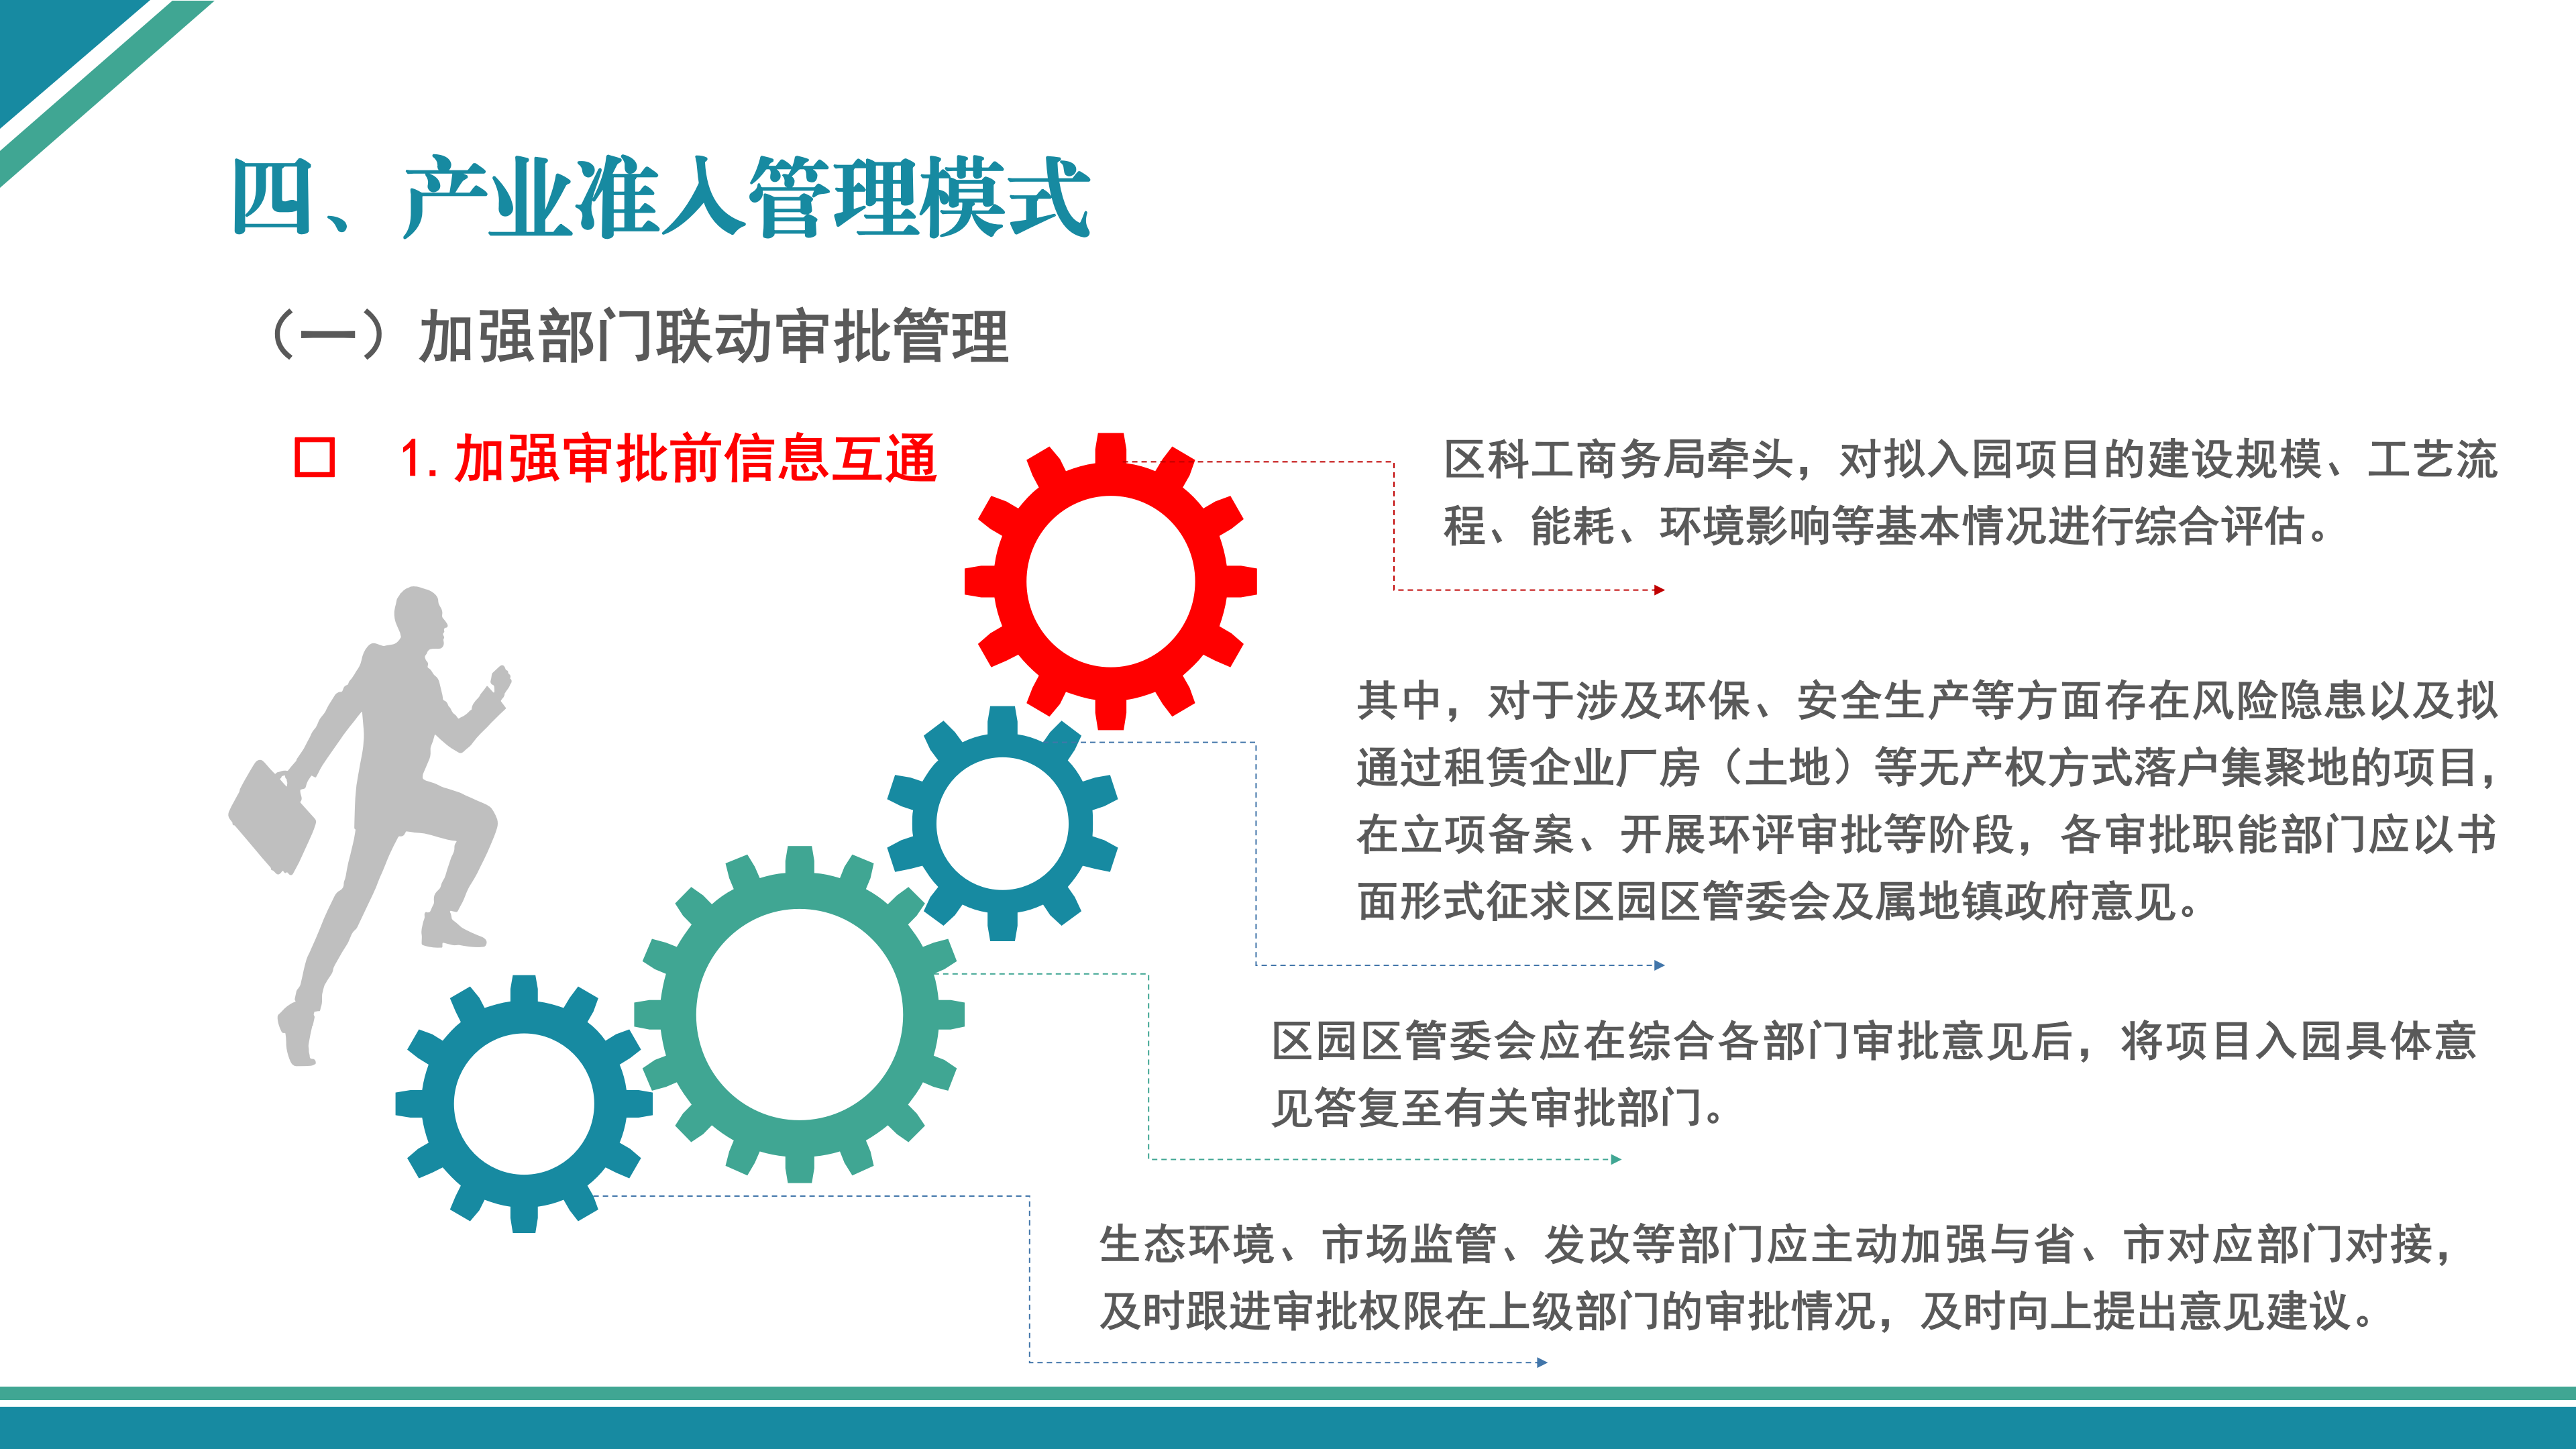 梅县区产业集聚地产业项目准入管理办法（试行）政策解读_13.png